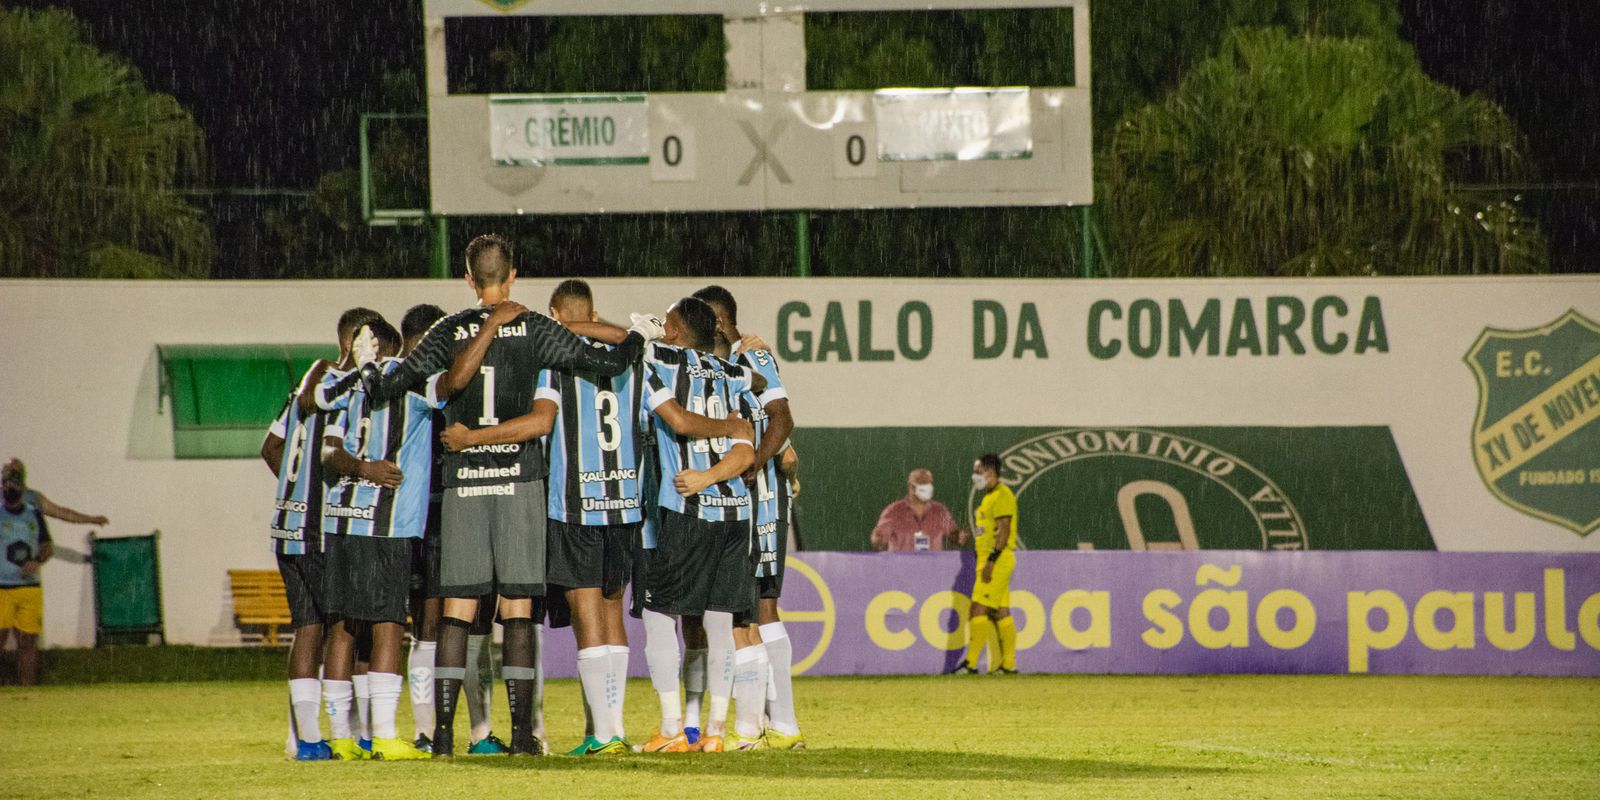 Grêmio defeats Mixto 2-0 in the debut of the Copa São Paulo